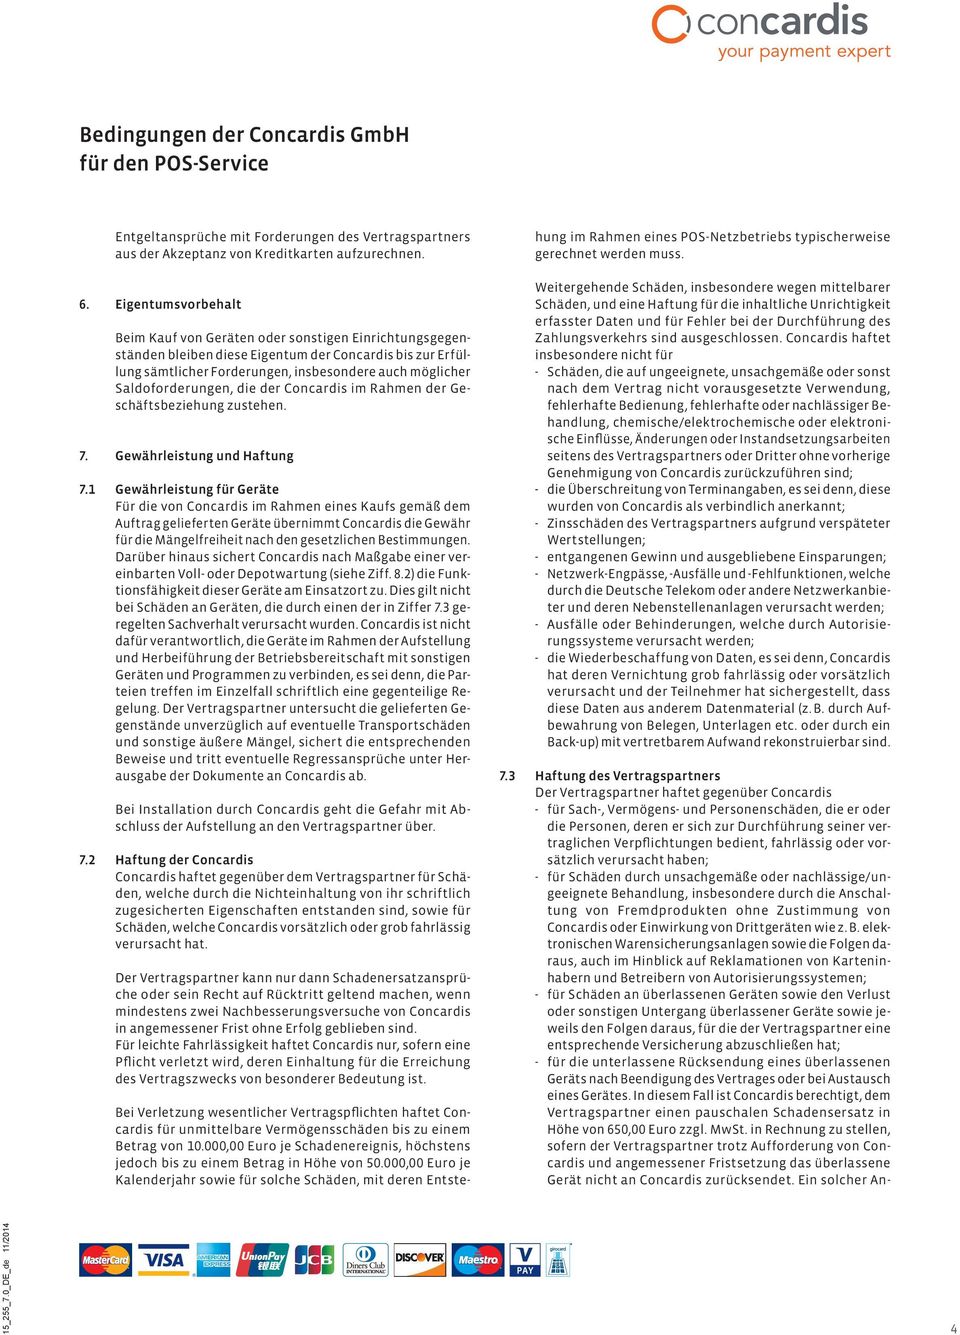 Saldoforderungen, die der Concardis im Rahmen der Geschäftsbeziehung zustehen. 7. Gewährleistung und Haftung 7.